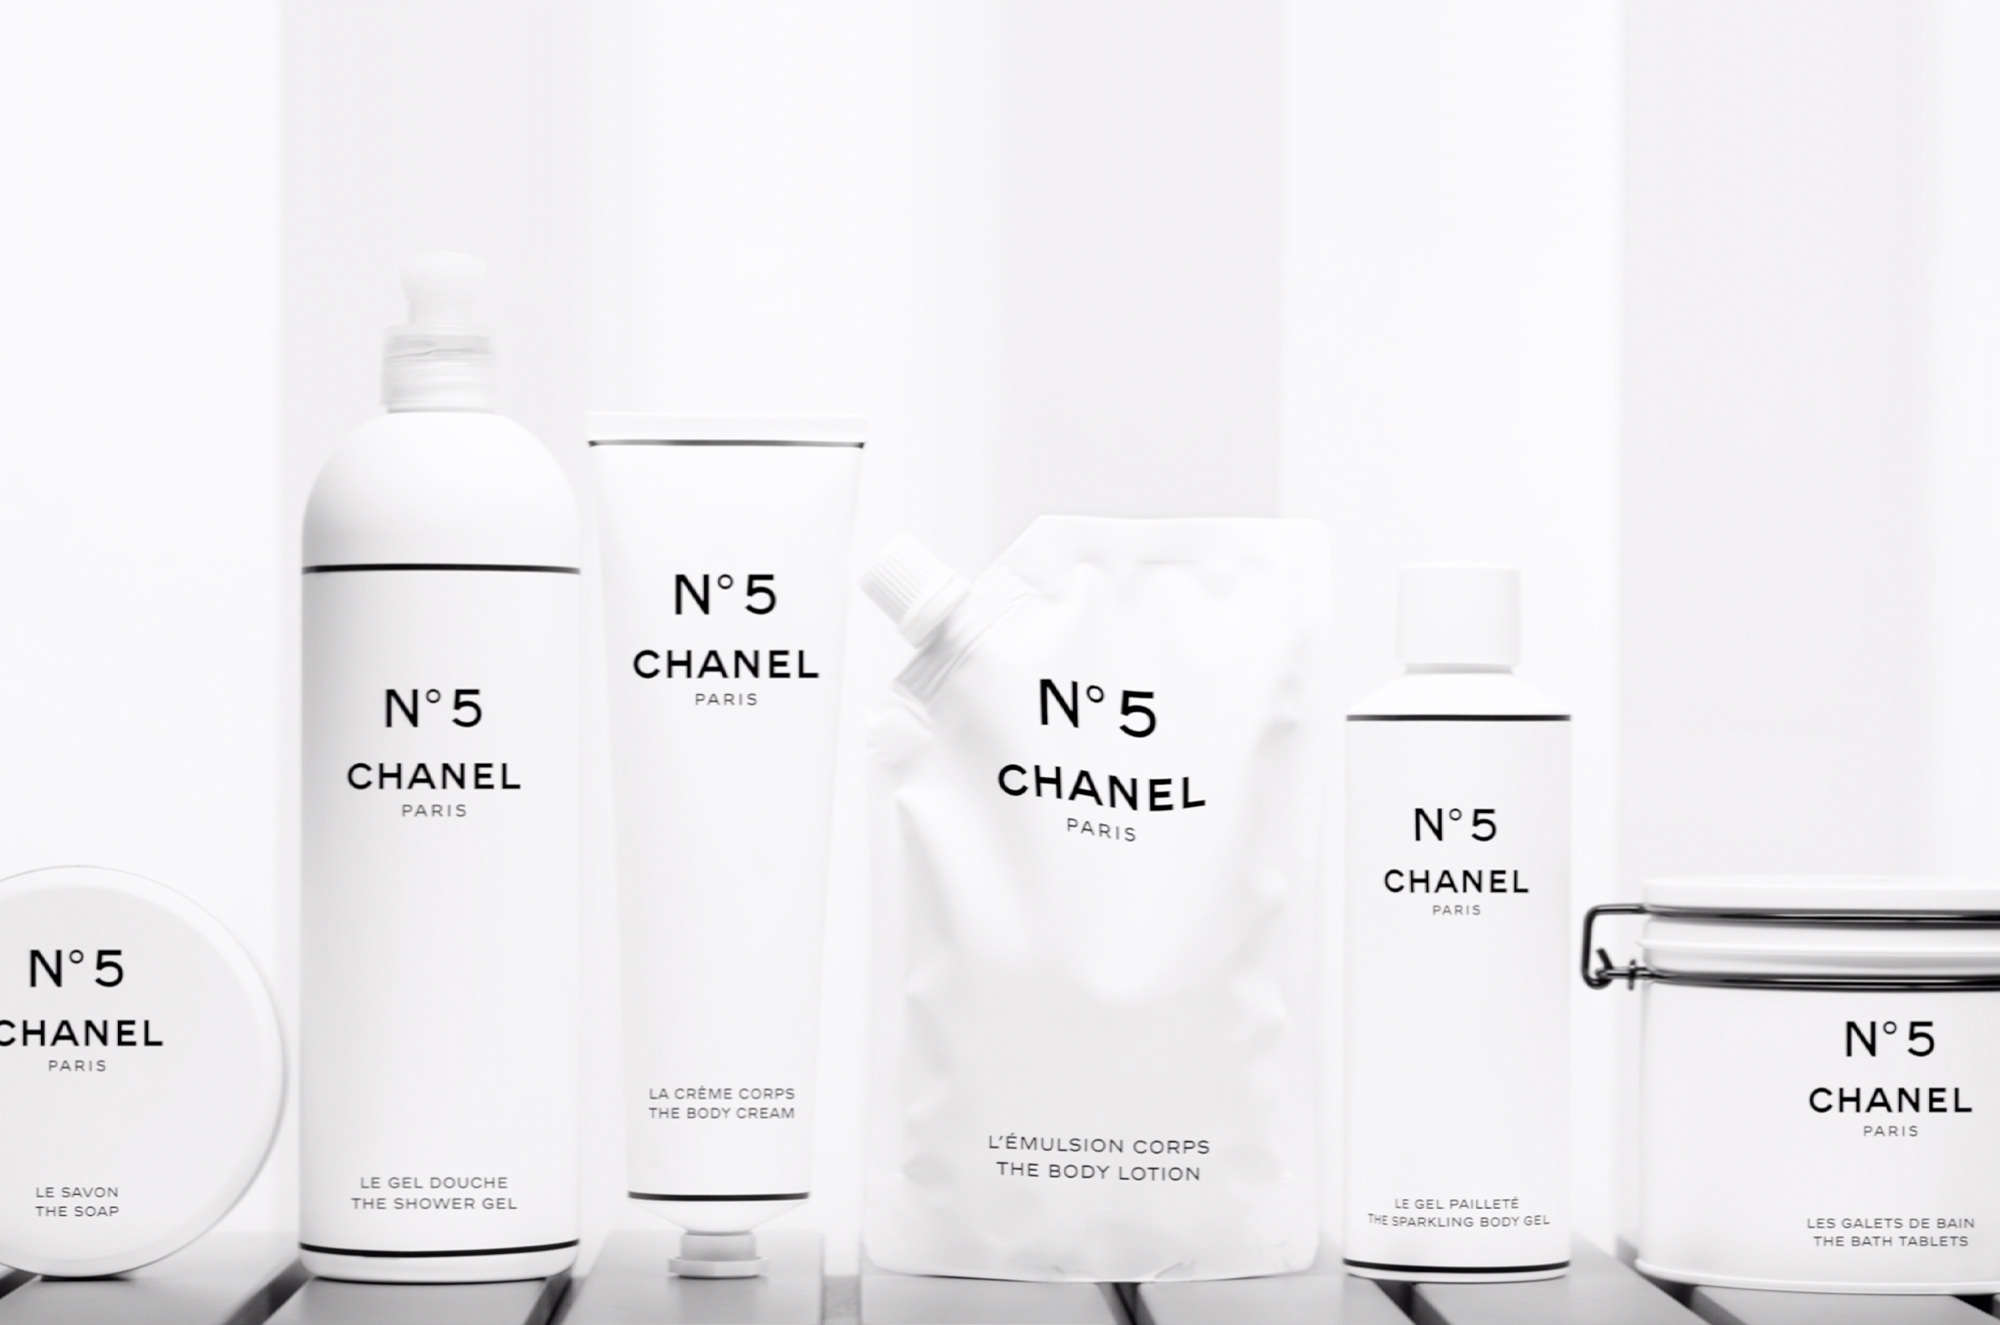 CHANEL, Bath & Body, Chanel Bath Tablets Nwt